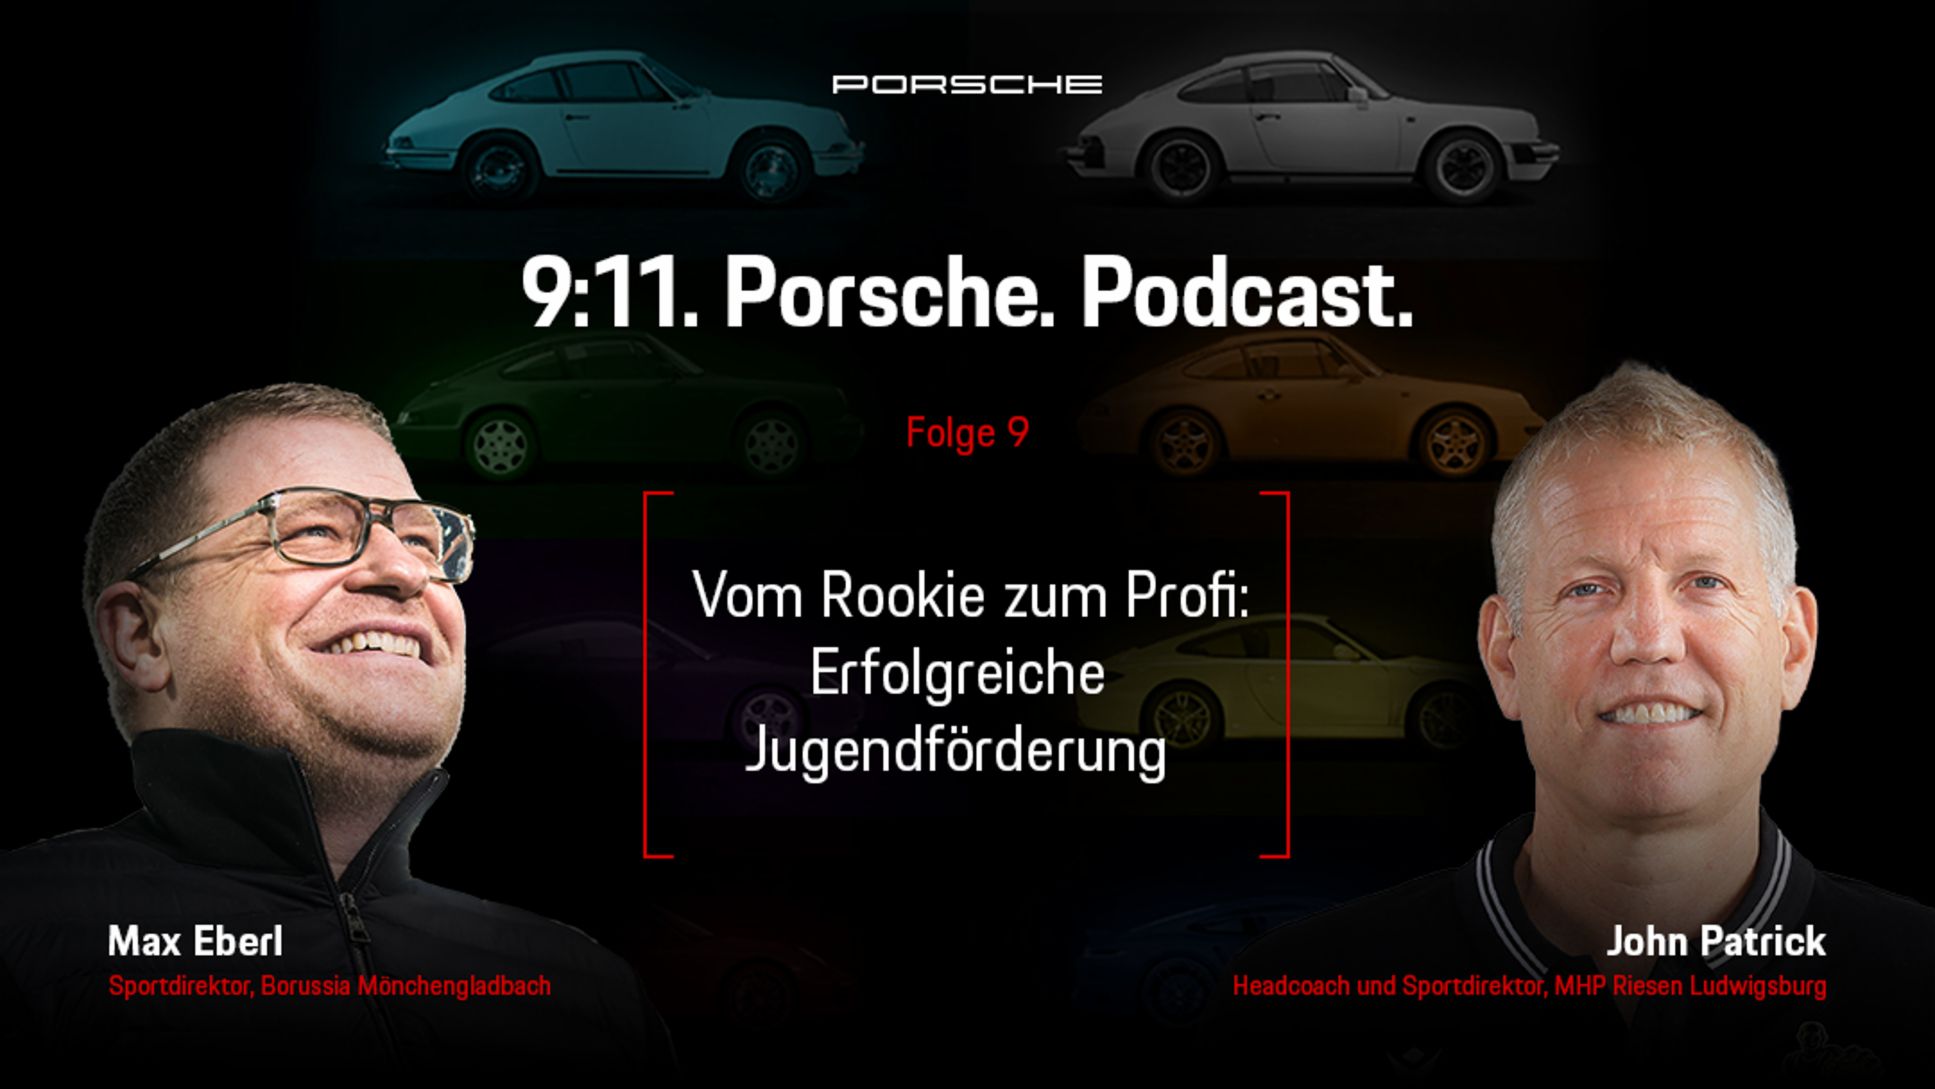 Max Eberl, Sportdirektor von Borussia Mönchengladbach, John Patrick, Headcoach und Sportdirektor der MHP Riesen Ludwigsburg, l-r, Podcast 9:11, Folge 9, 2021, Porsche AG